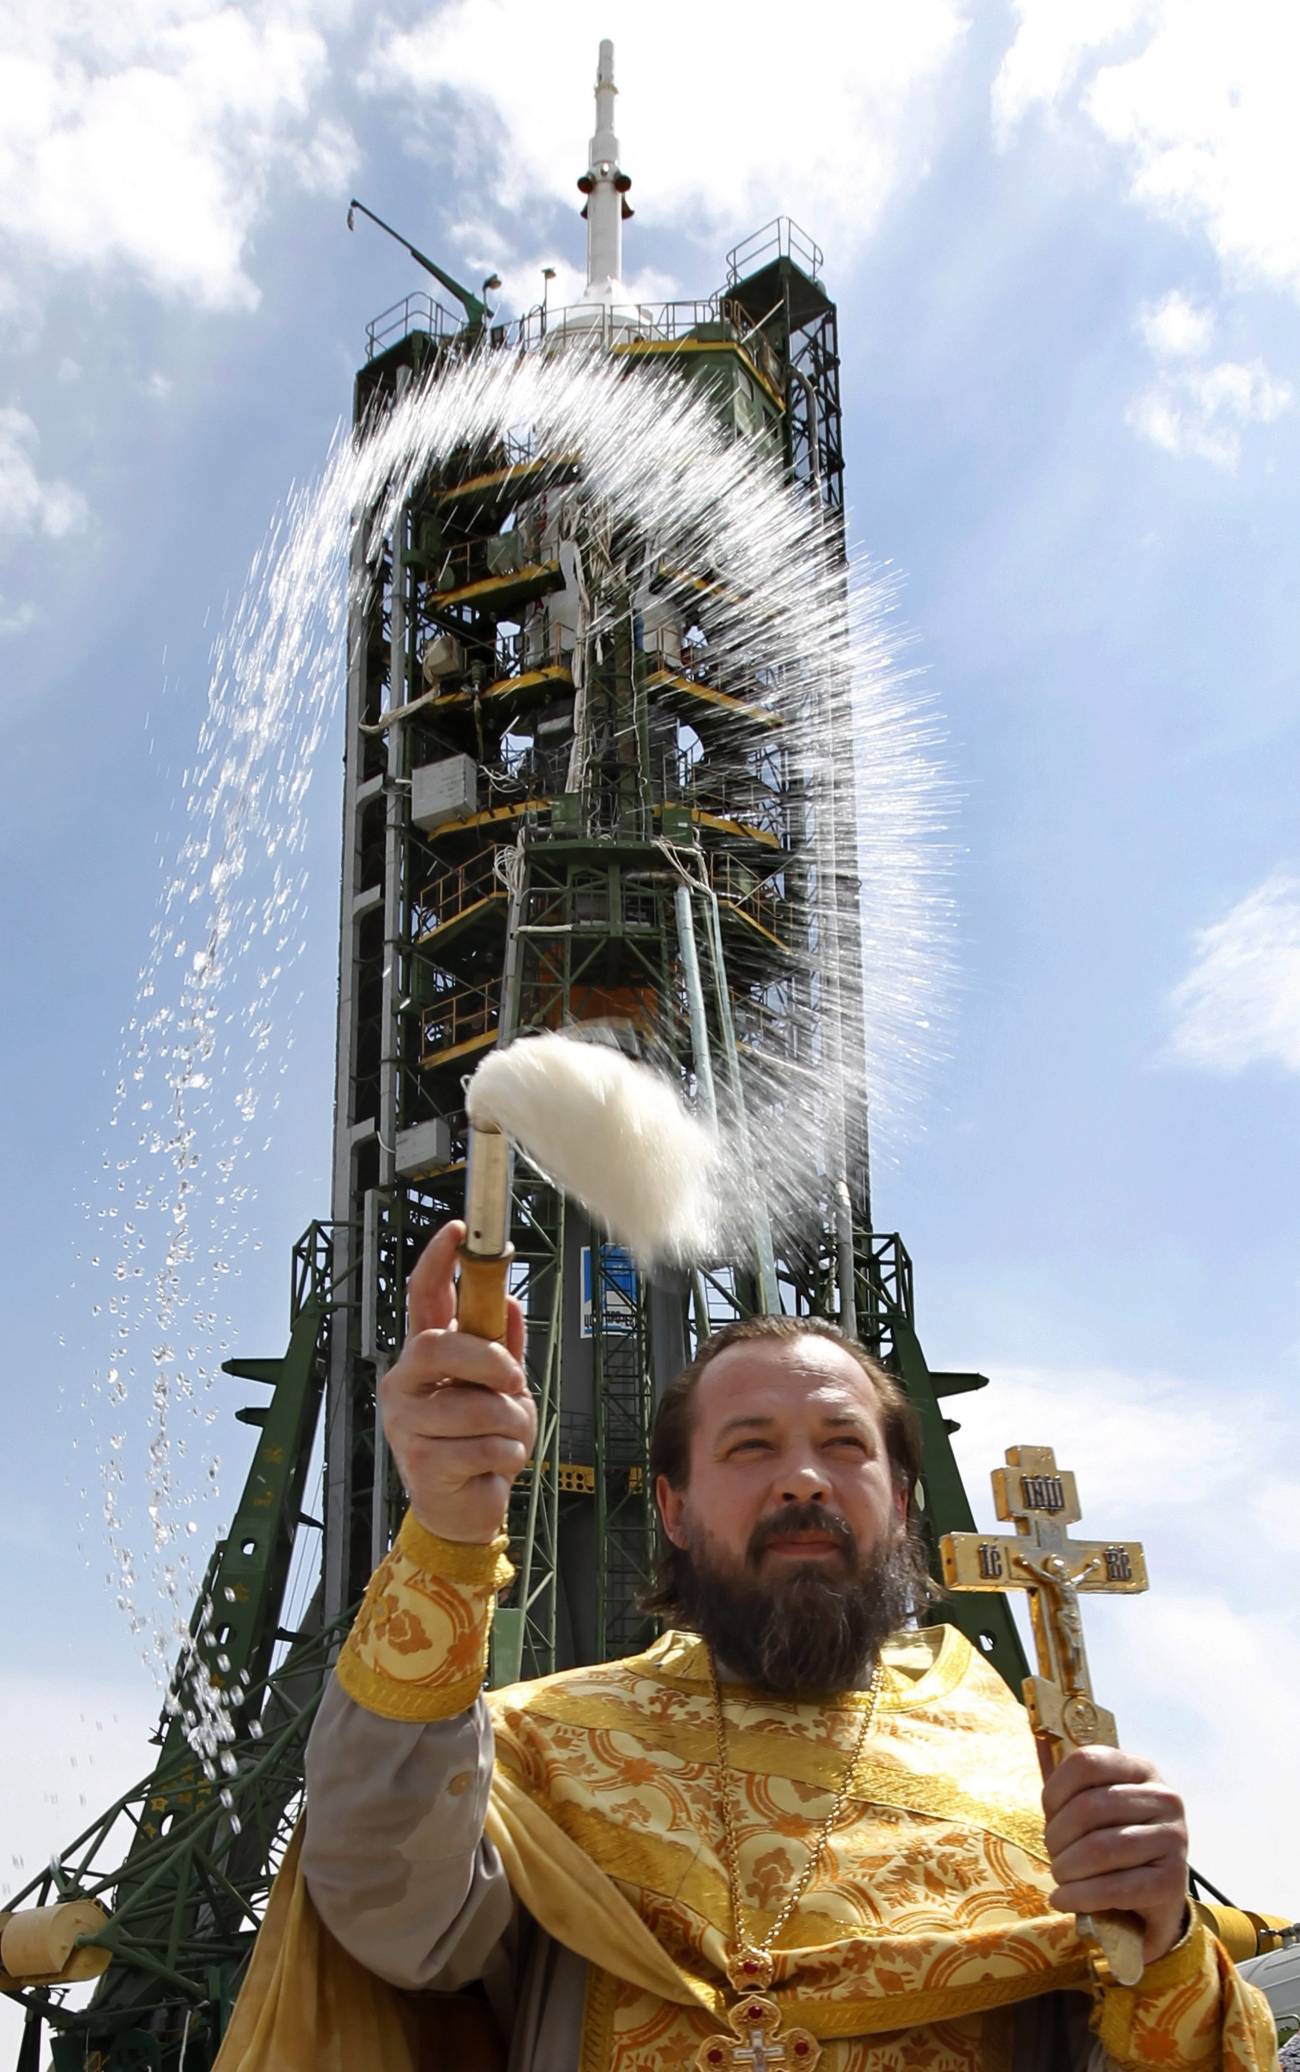 Un sacerdote ortodoxo bendice el Soyuz TMA-04M en la plataforma de lanzamiento en el cosmódromo de Baikonur en Kazajistán hoy, lunes 14 de 2010. El lanzamiento del Soyuz TMA-04M se realizará mañana, martes, 15 de abril de 2012.